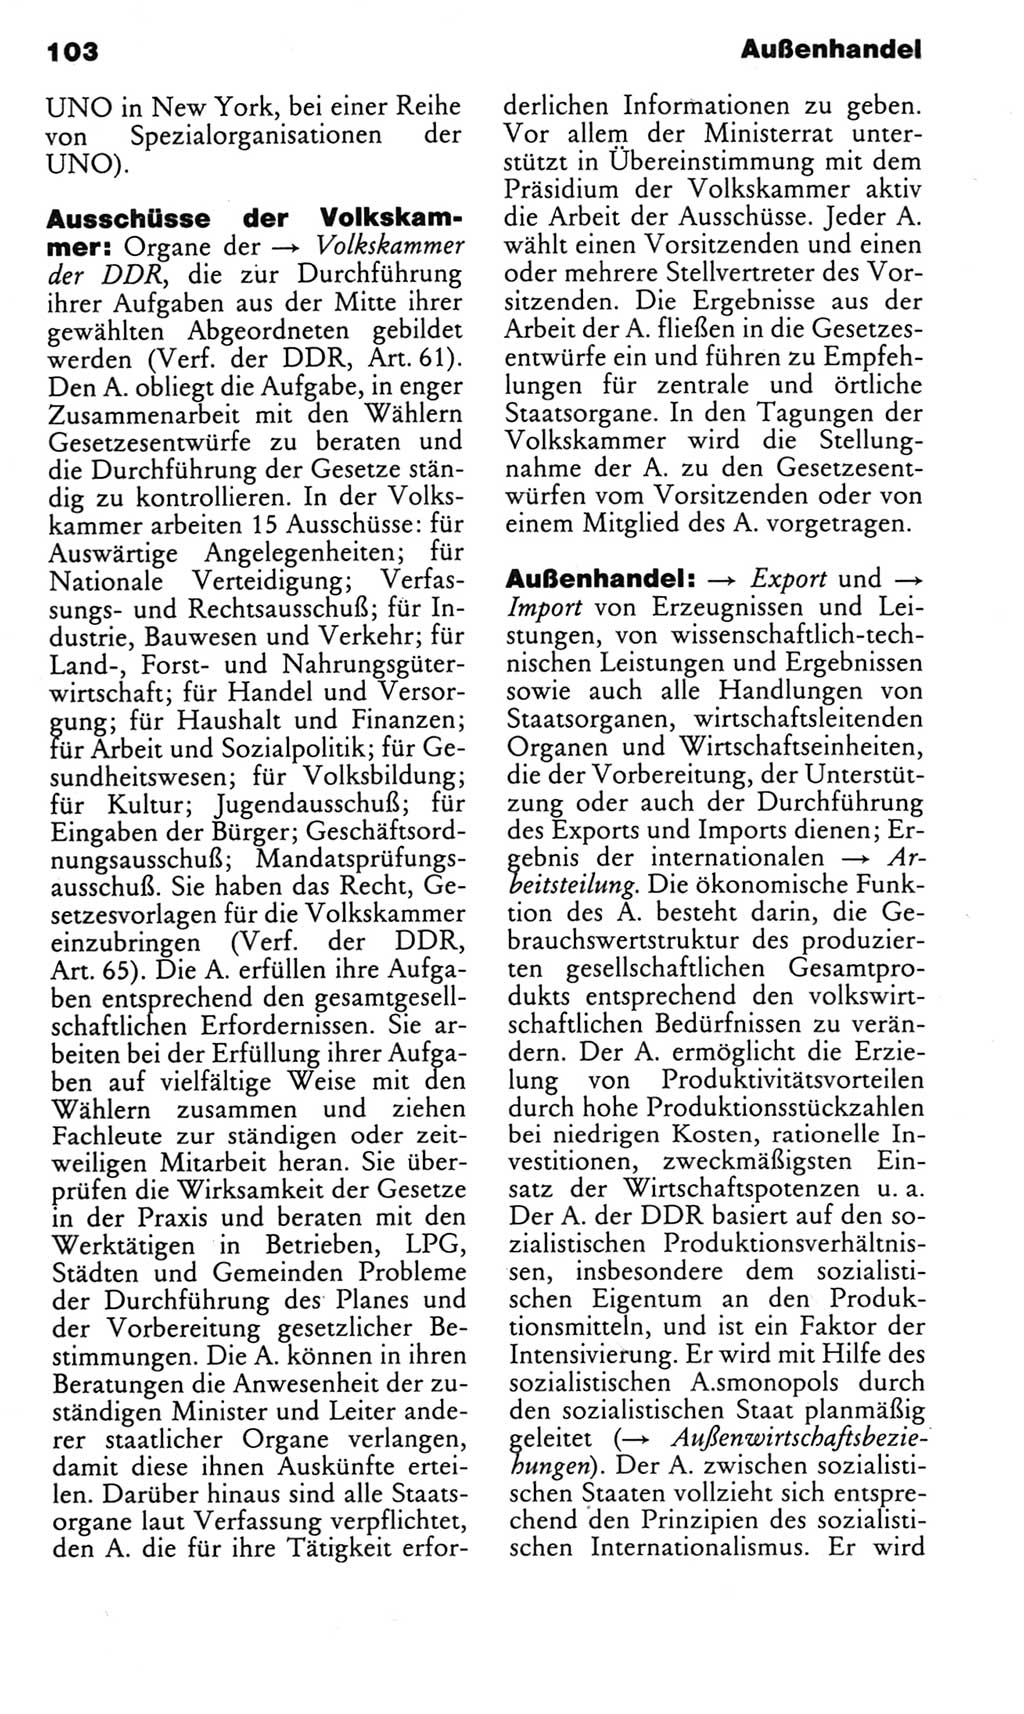 Kleines politisches Wörterbuch [Deutsche Demokratische Republik (DDR)] 1983, Seite 103 (Kl. pol. Wb. DDR 1983, S. 103)